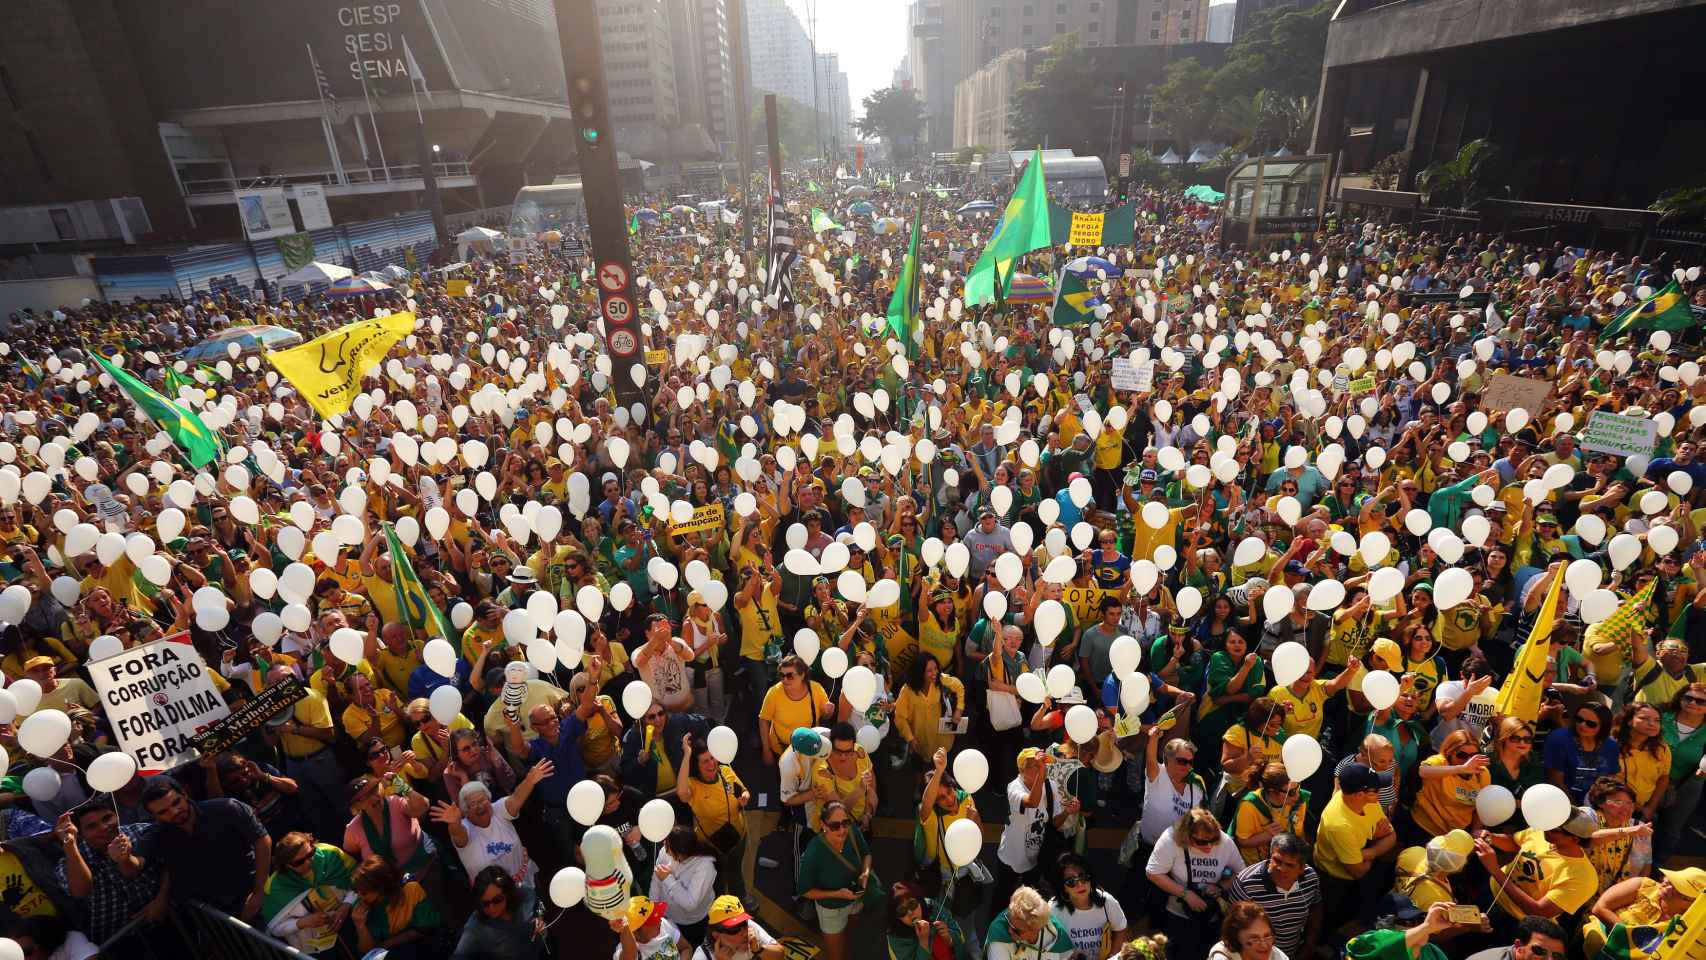 Los manifestantes reclaman la destitución de la presidenta suspendida Dilma Rousseff.